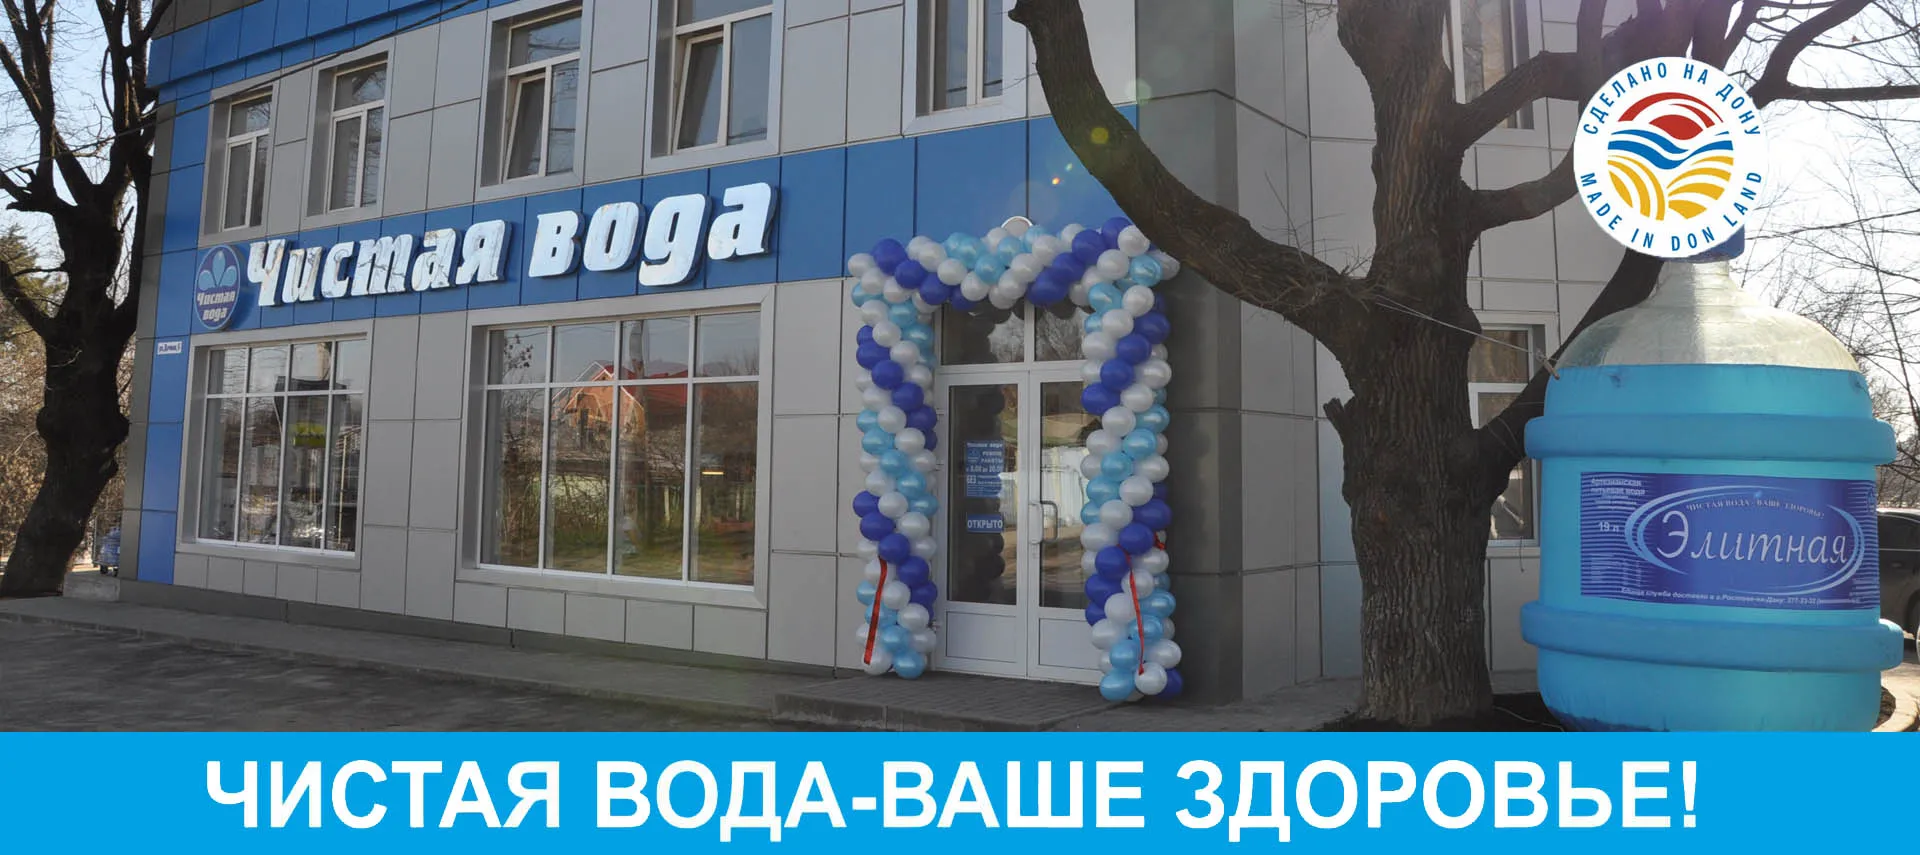 Доставка воды в Ростове